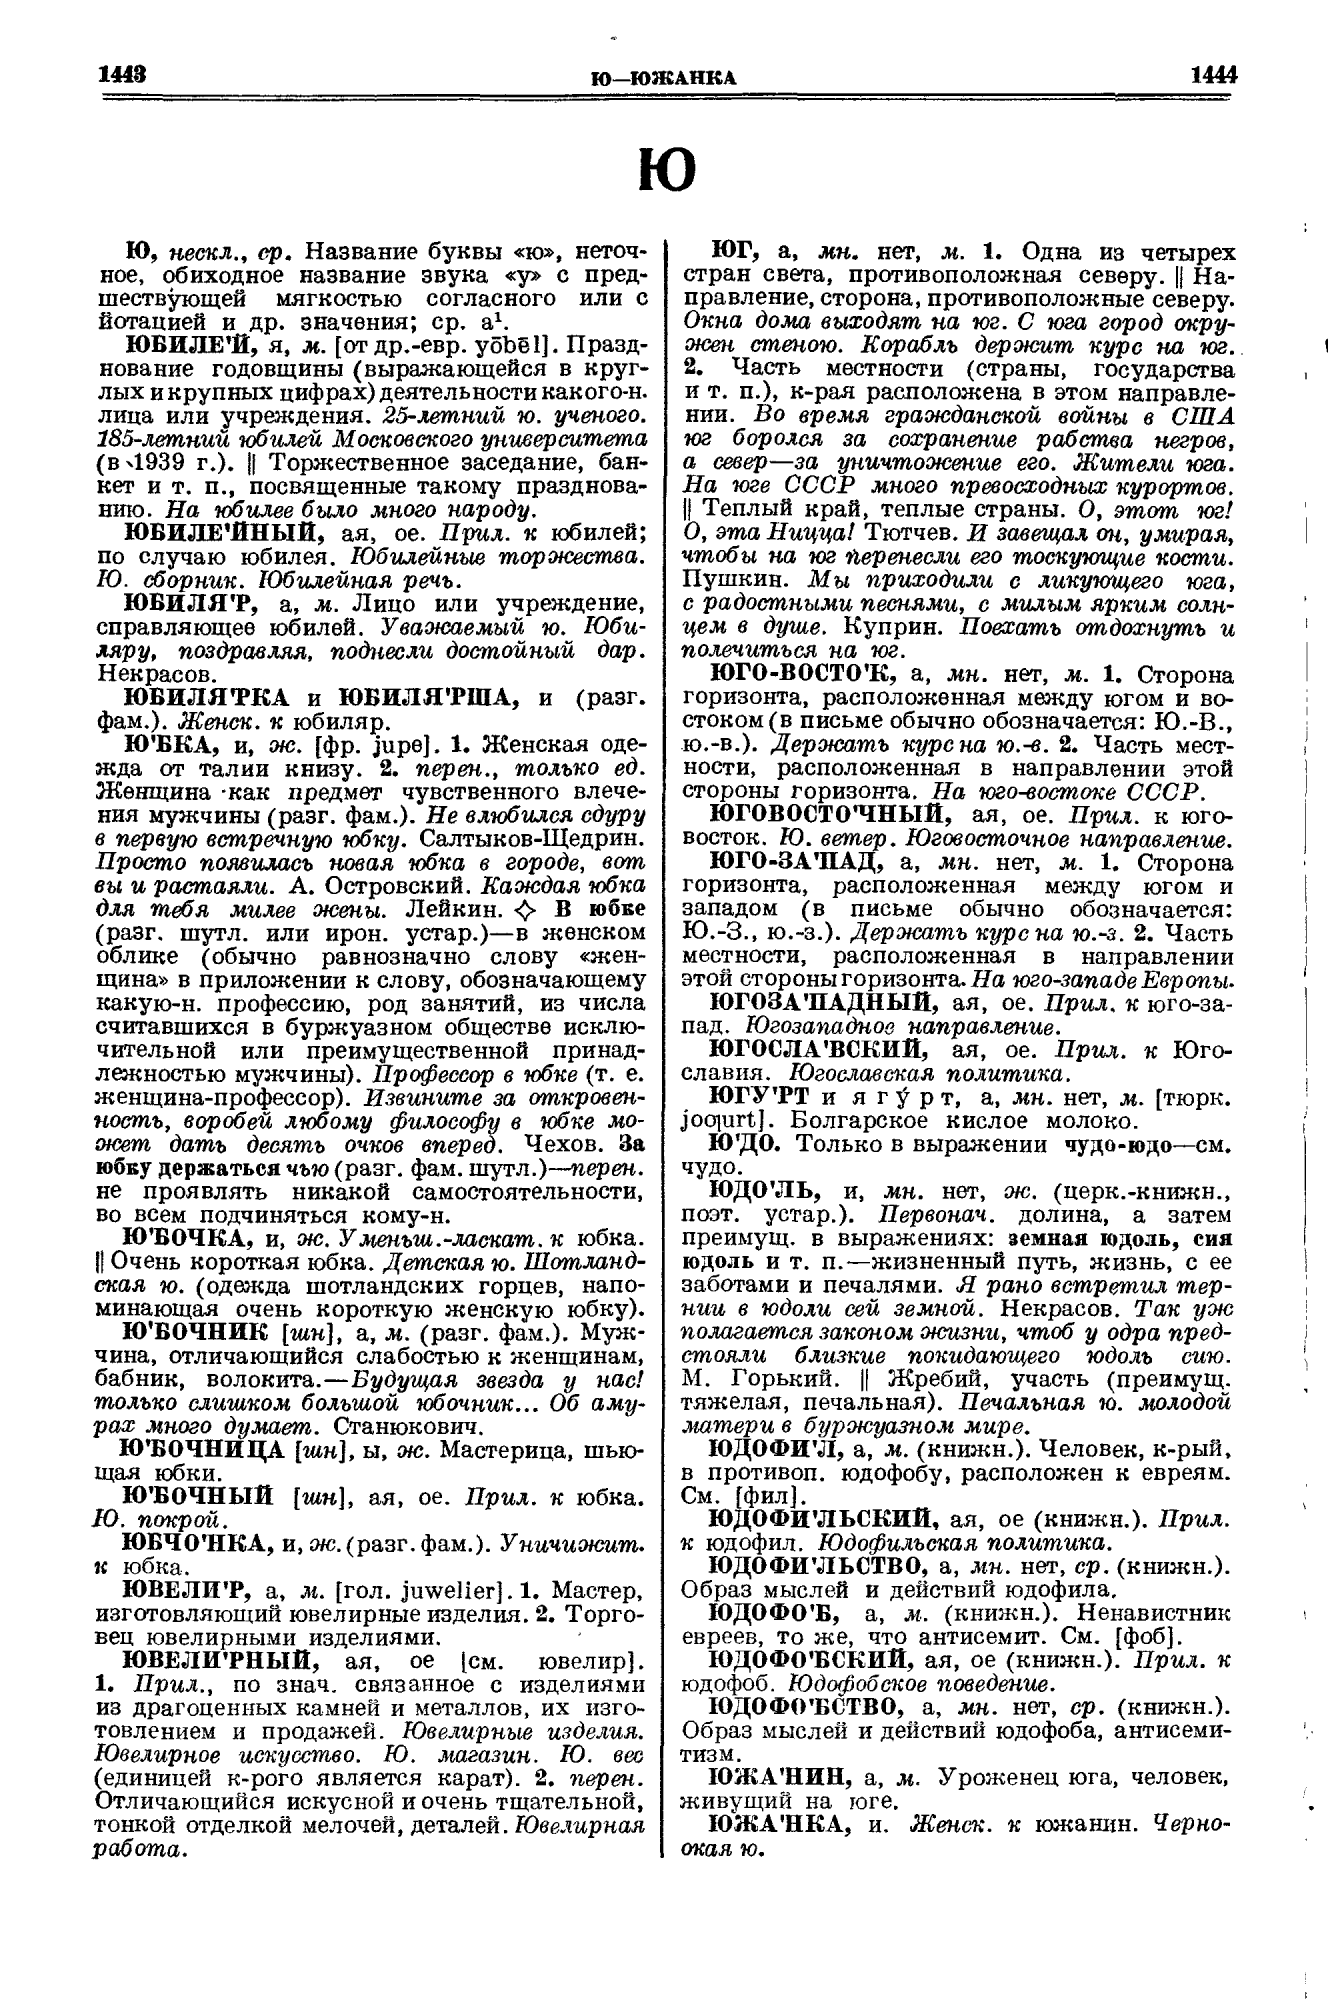 Фотокопия pdf / скан страницы 722 толкового словаря Ушакова (том 1)